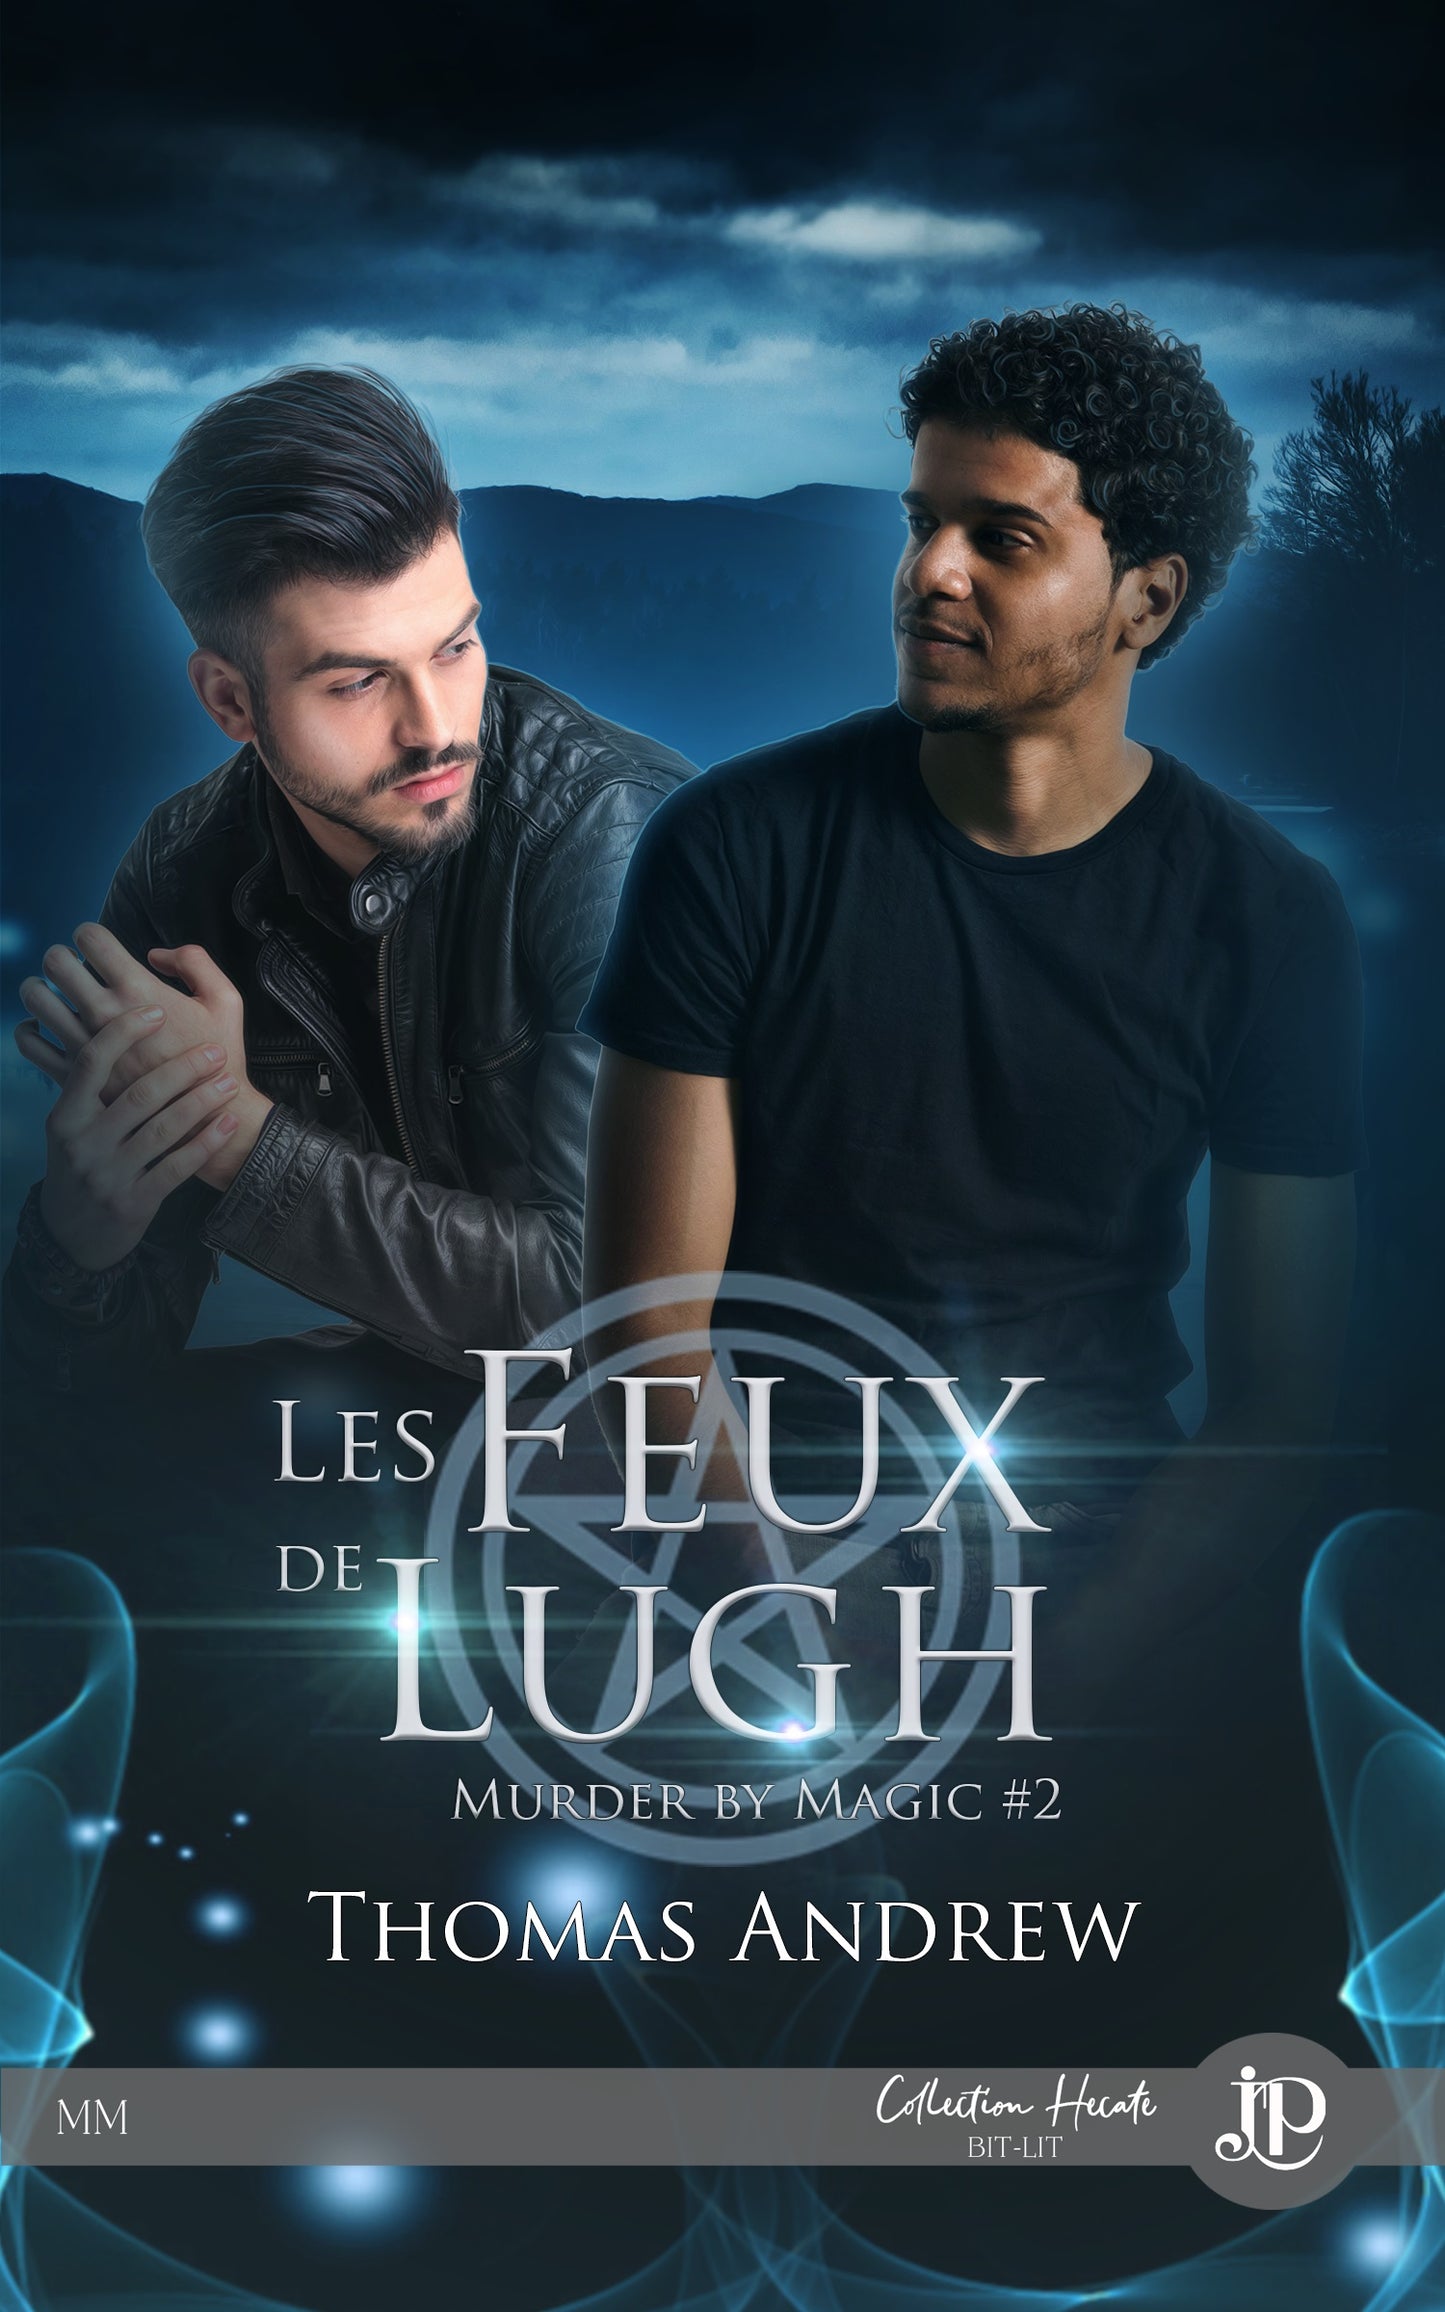 Murder by magic #2-Les feux de lugh